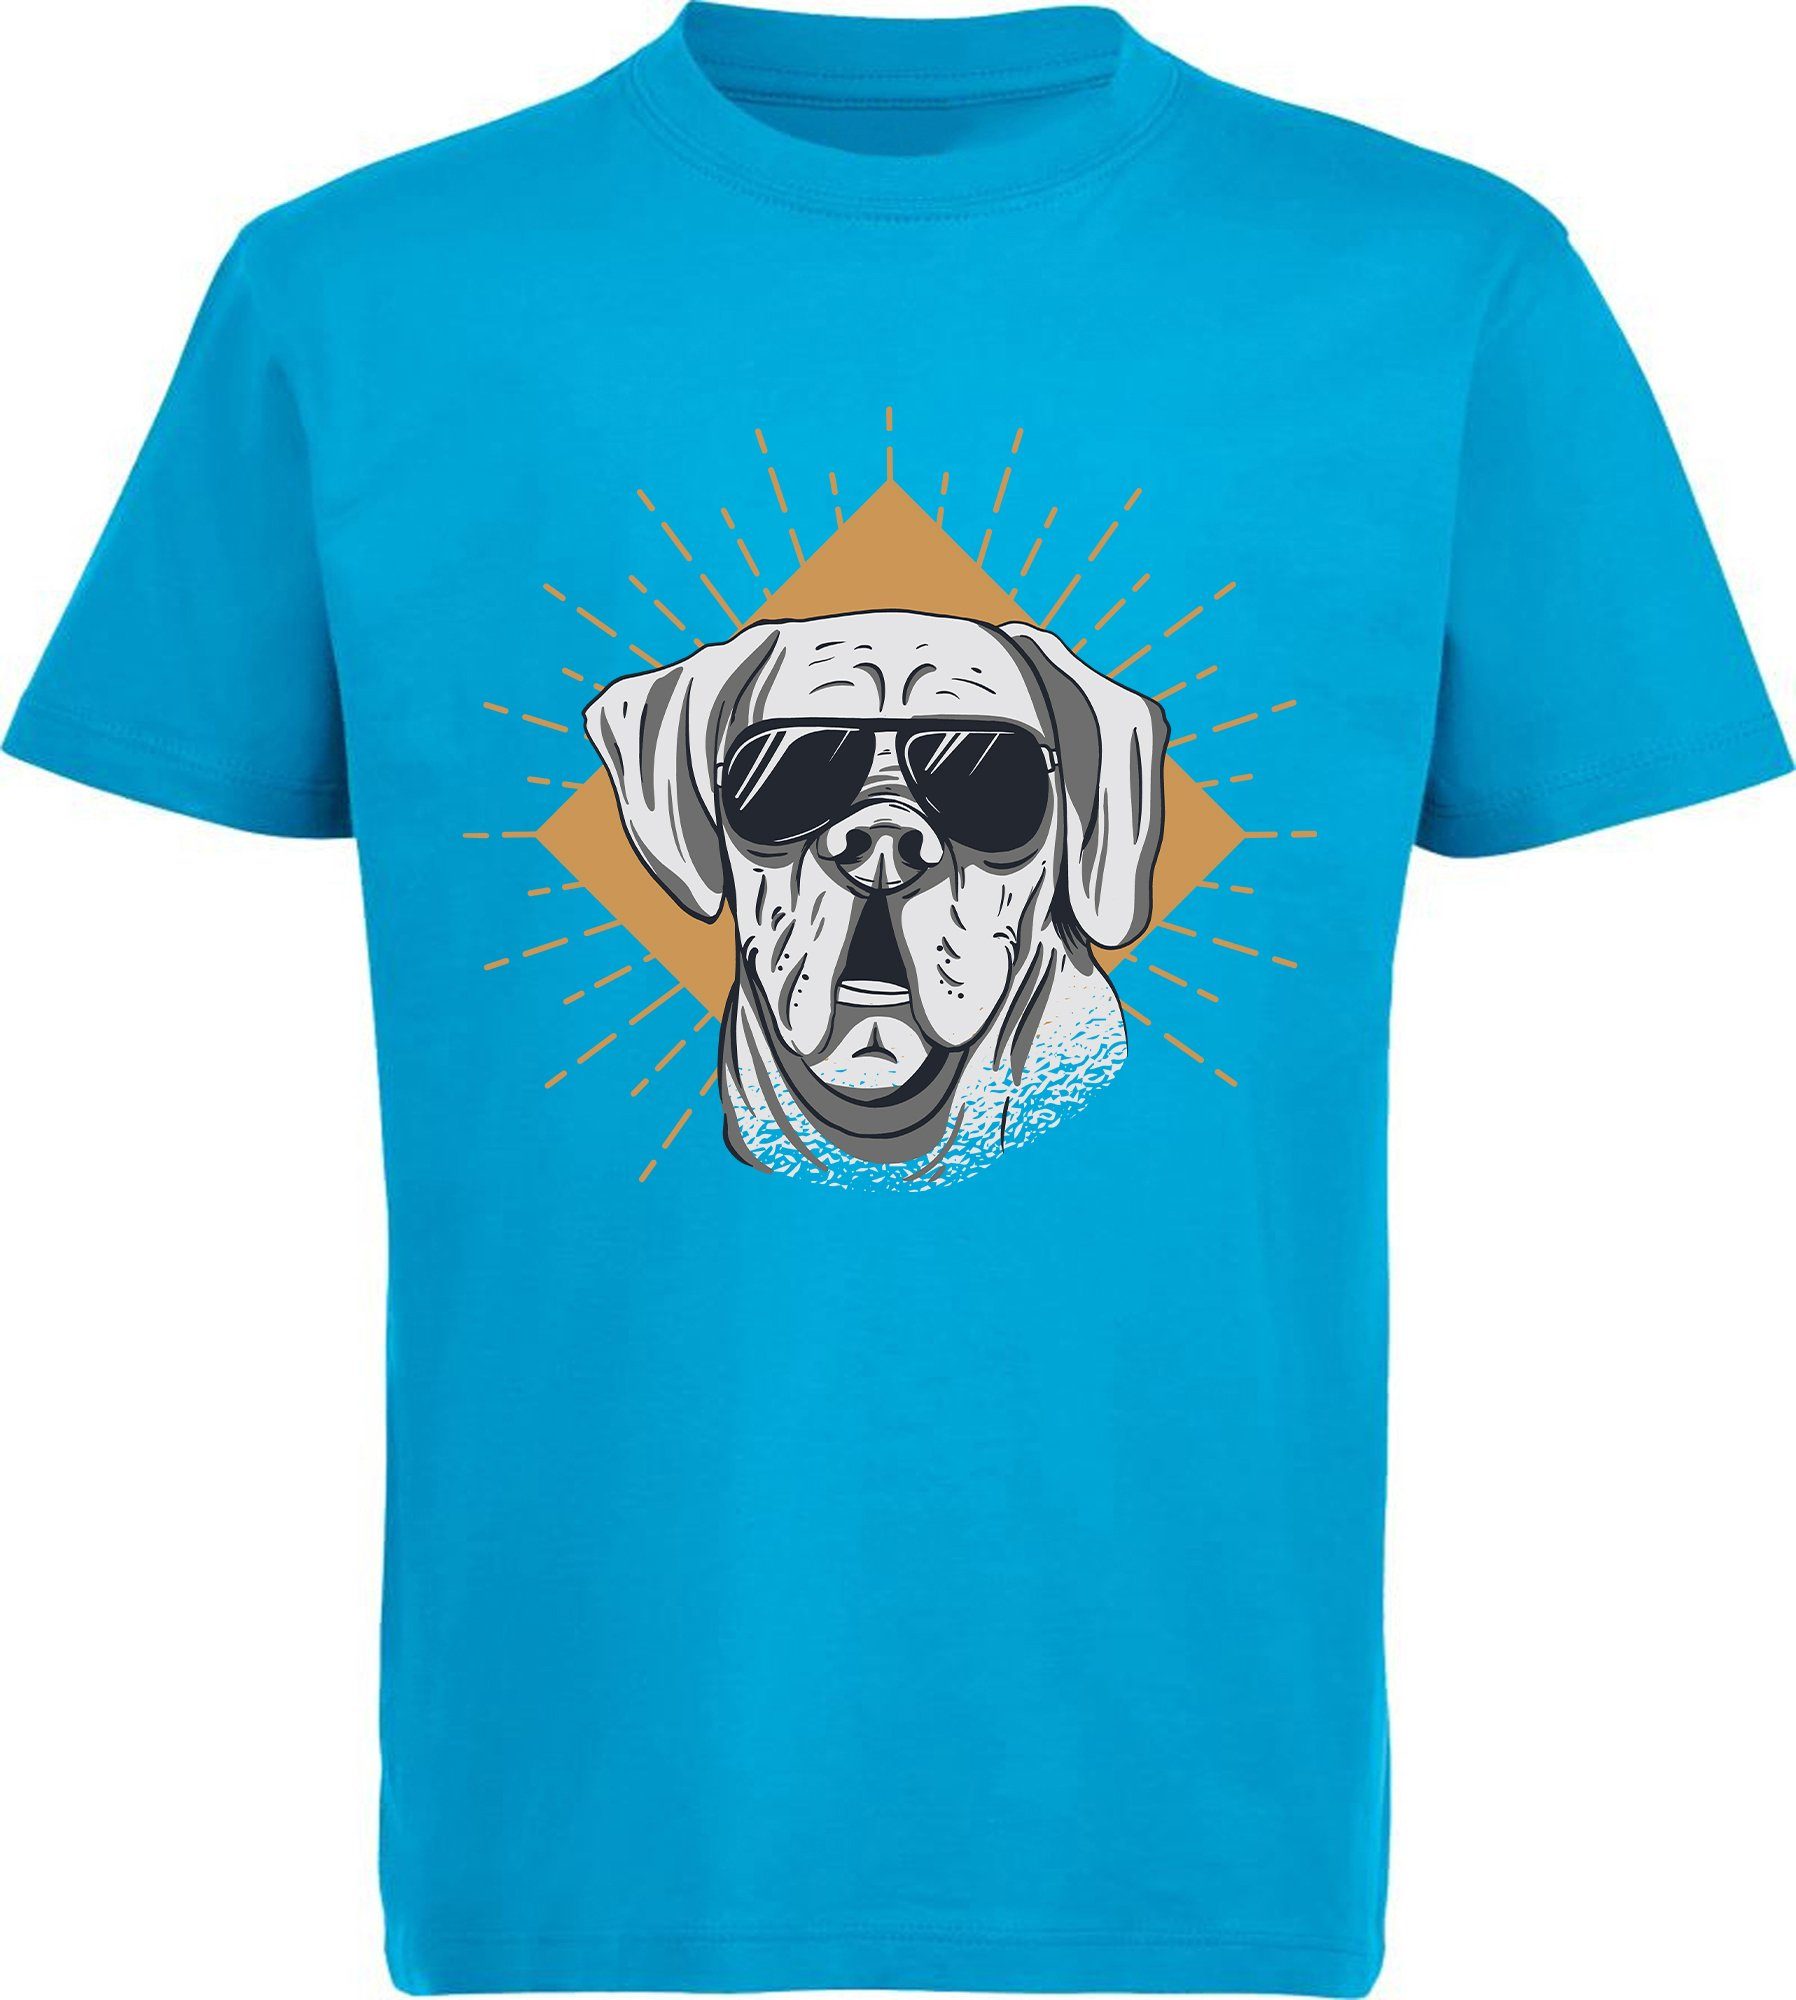 MyDesign24 Print-Shirt bedrucktes Kinder Hunde T-Shirt - Cooler Hund mit Sonnenbrille Baumwollshirt mit Aufdruck, i224 aqua blau